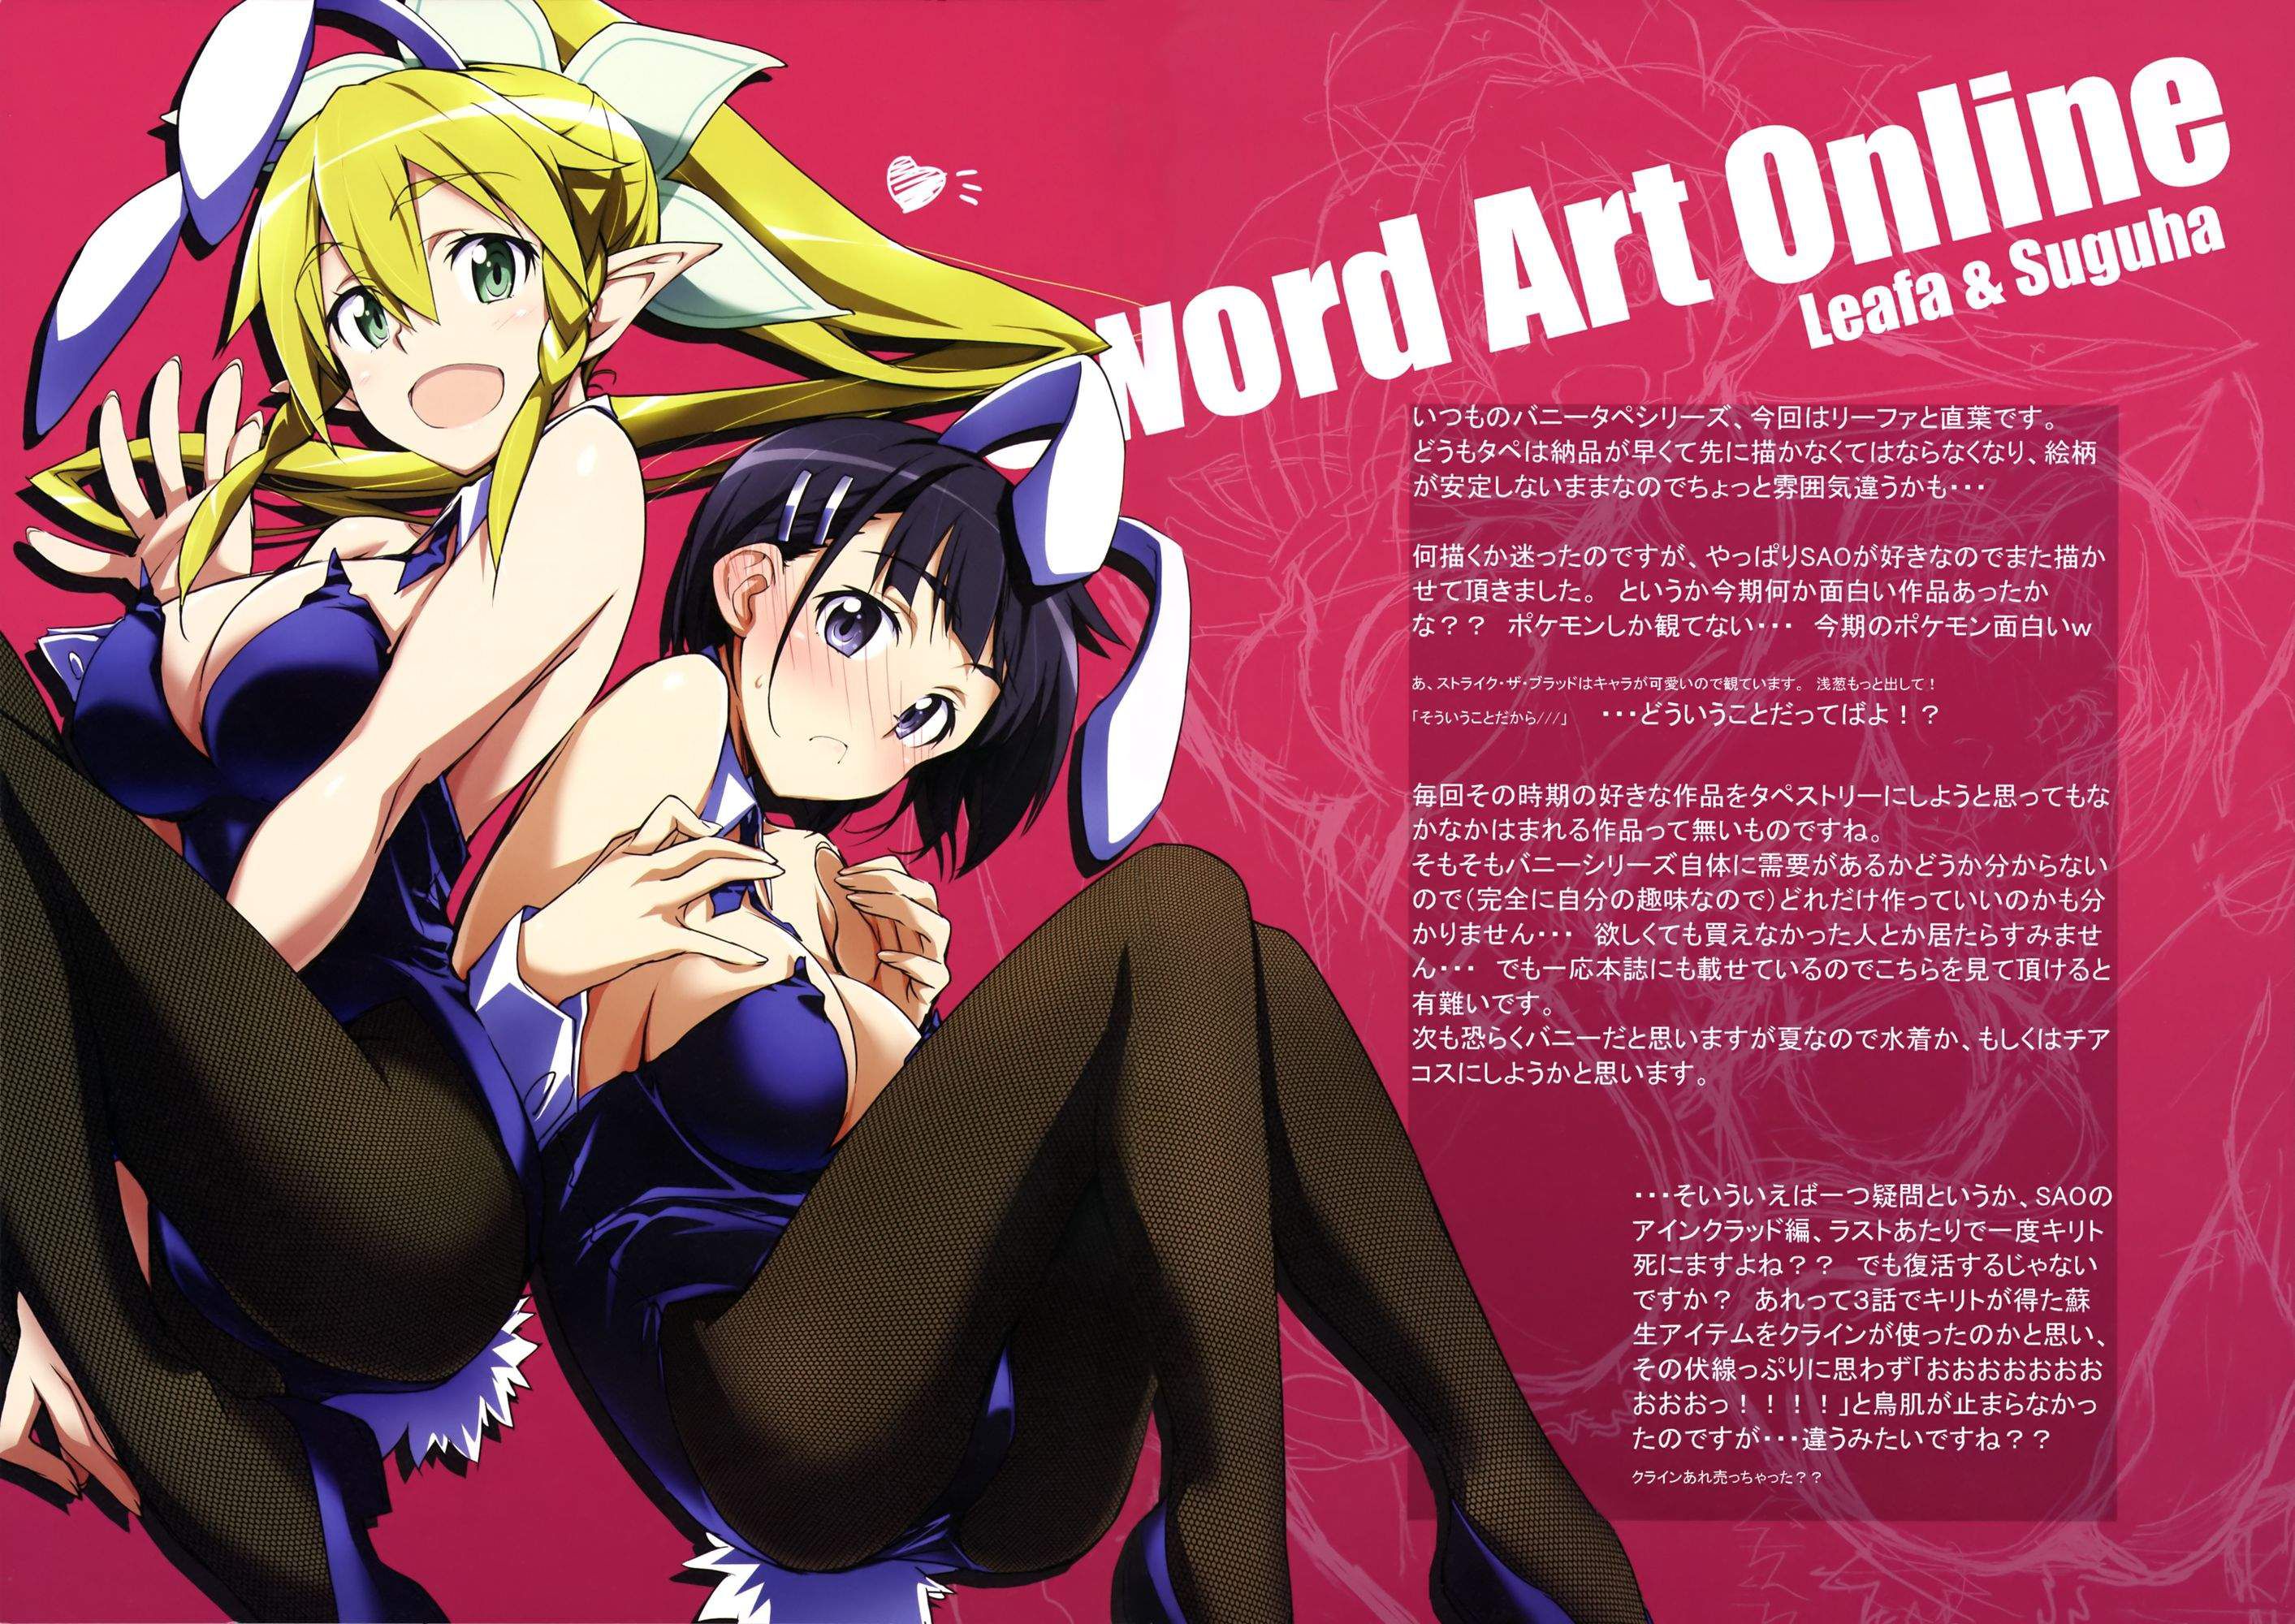 [Sword Art Online] (Kirigaya suguha) Erotic &amp; Moe Image ⑧ [SAO] 22